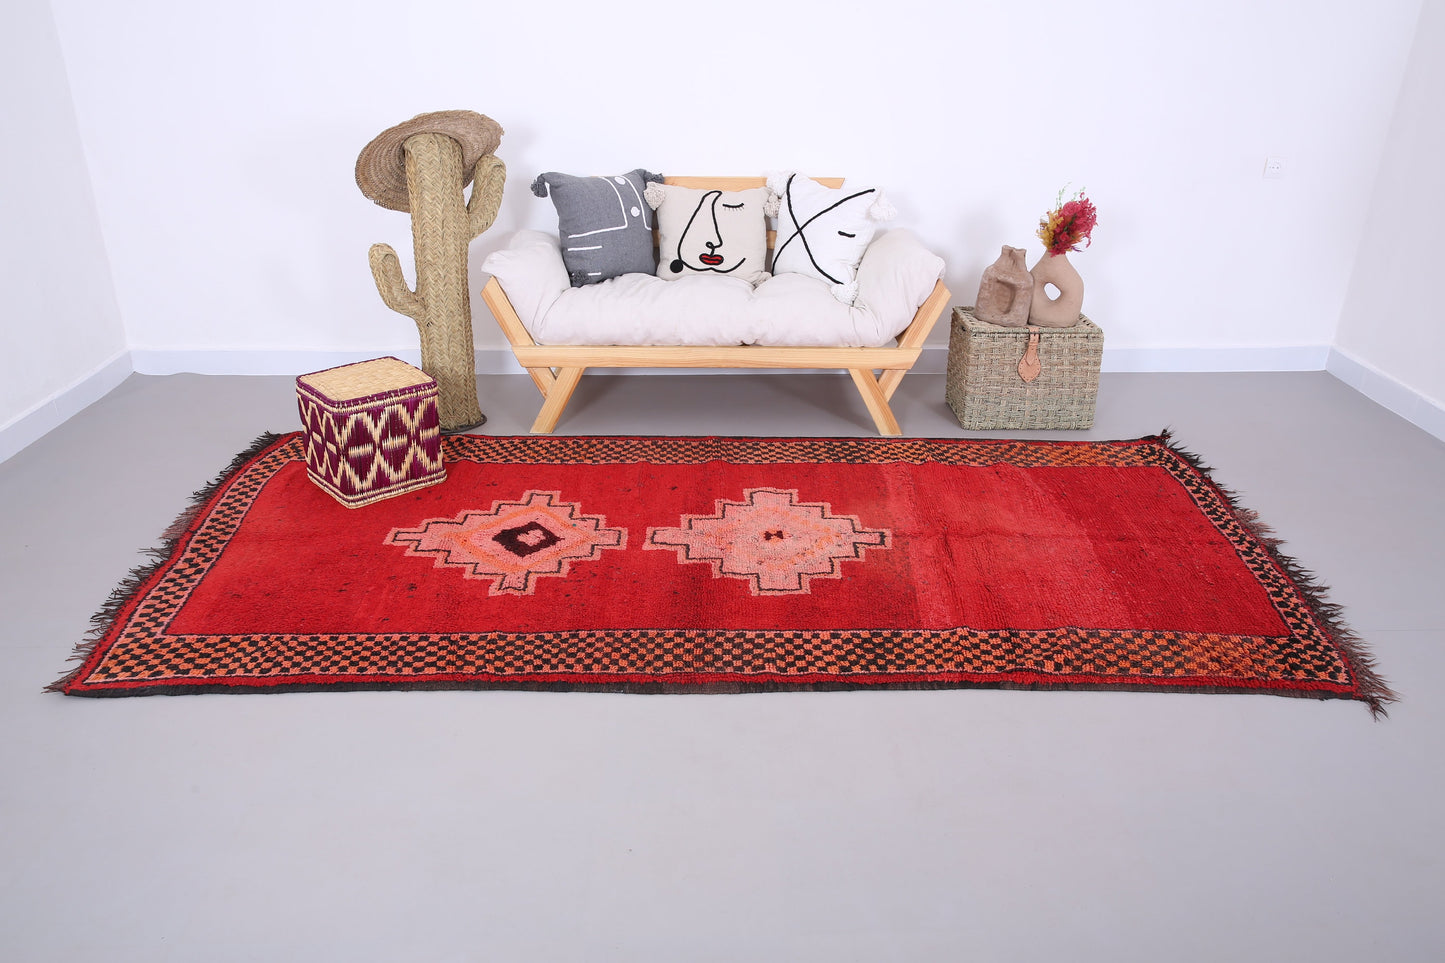 Roter marokkanischer Vintage-Teppich 5,4 FT x 10,2 FT - roter marokkanischer Teppich - Vintage-Tribal-Teppich - handgemachter Berberteppich - einzigartiger Vintage-Teppich - Boho-Teppich